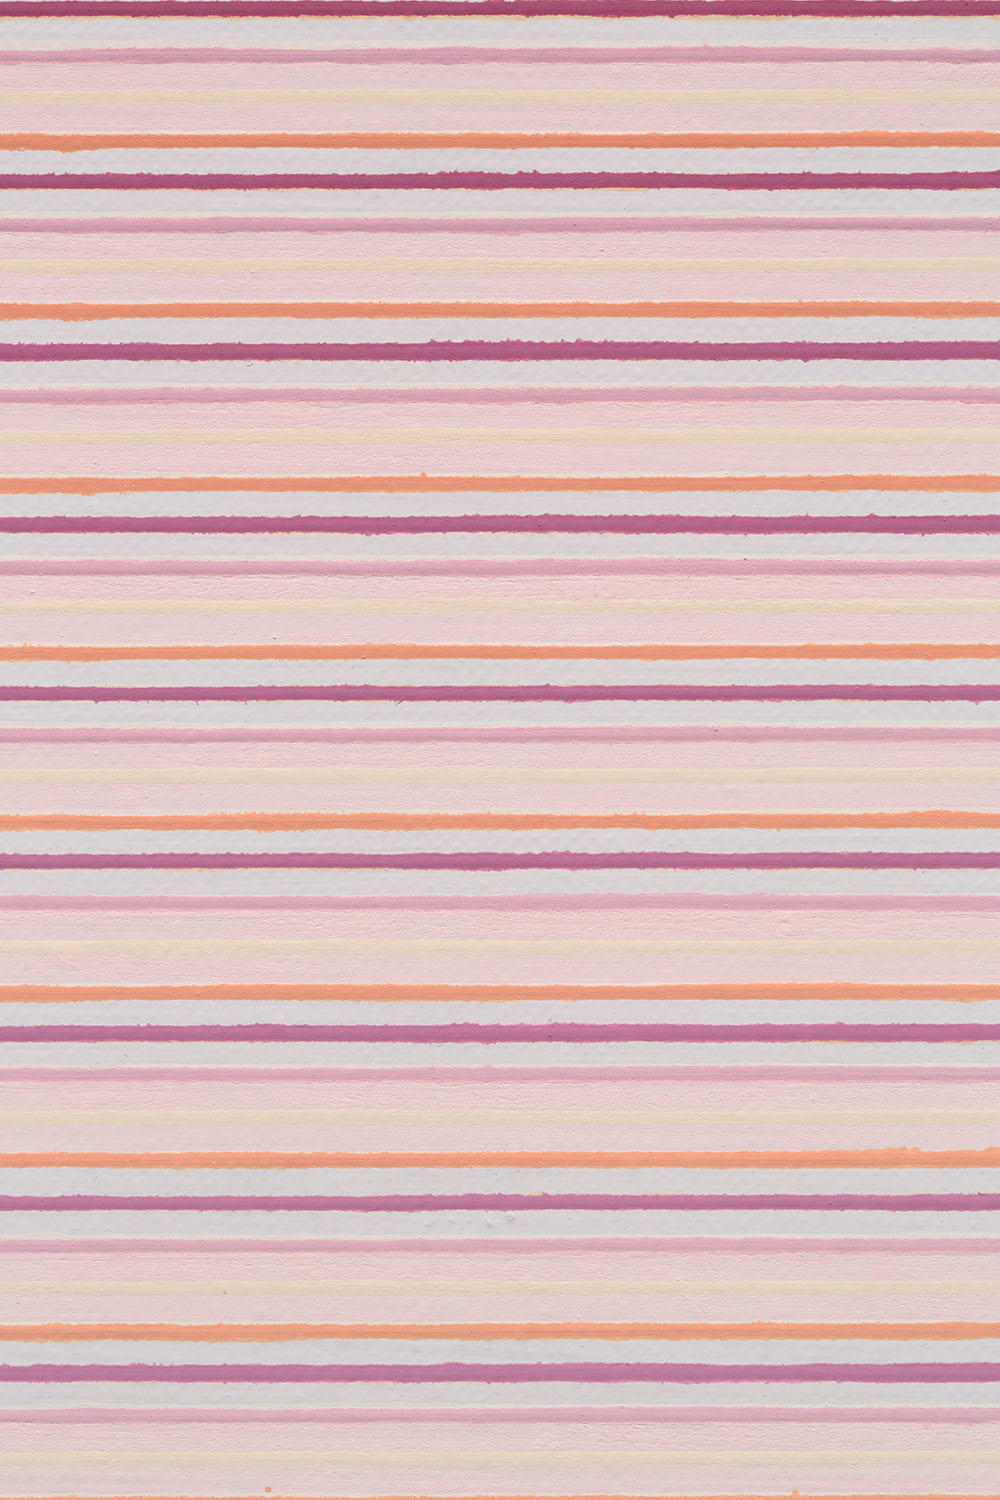  Jiří Matějů,  Six Stations  (polyptych), detail, 2015, pigments and mixed media on canvas, 141 x 99 cm 